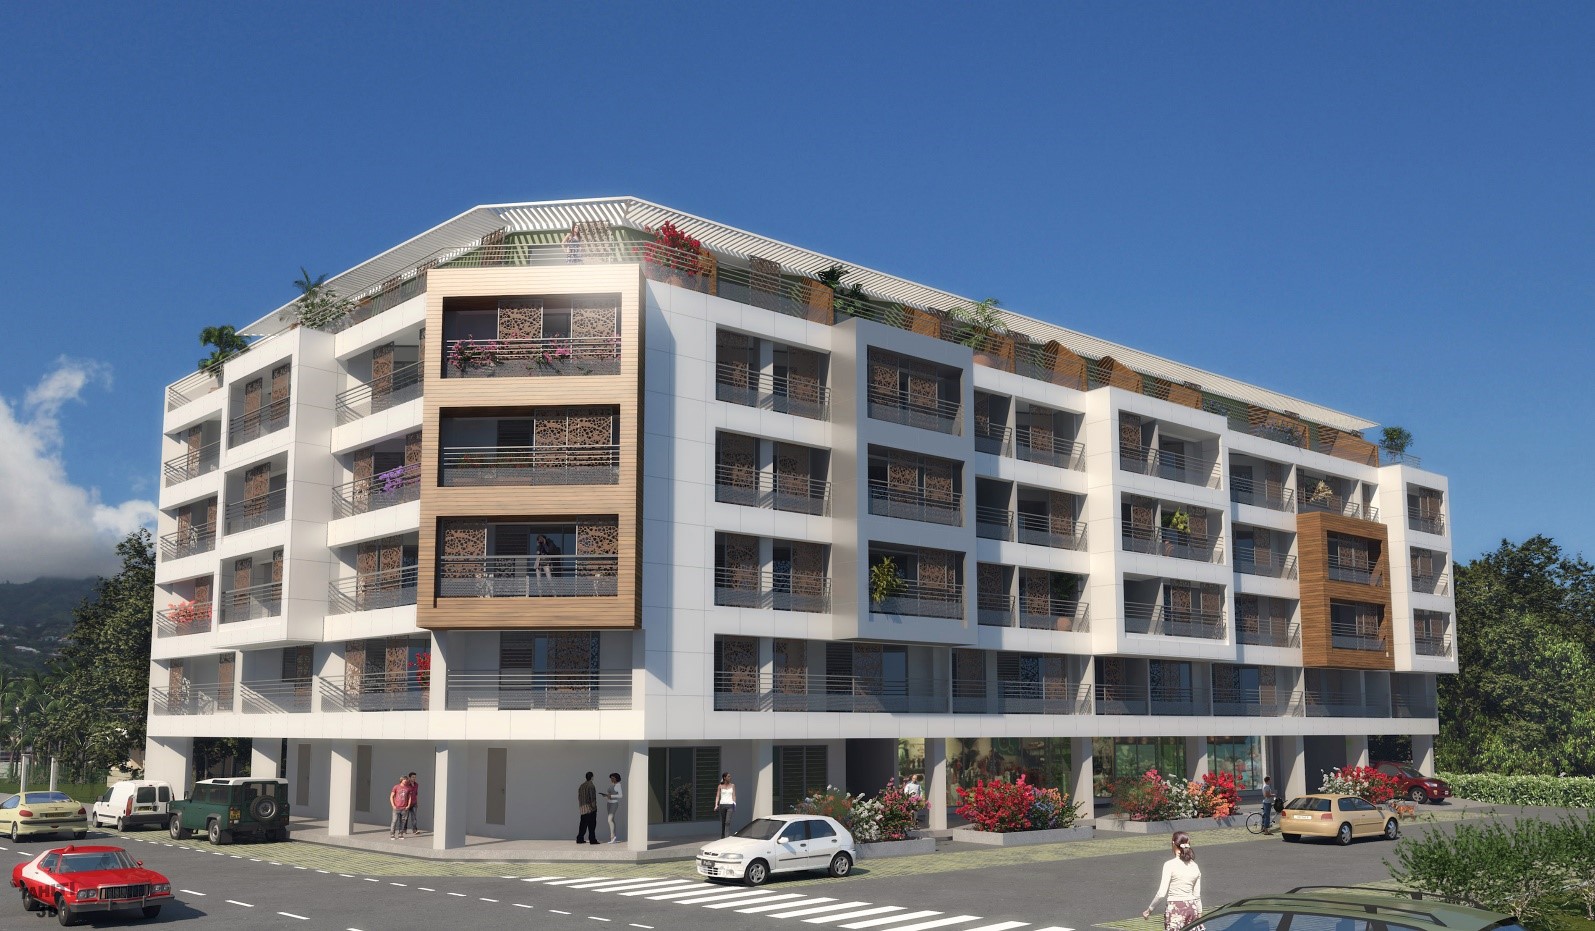 Le projet envisage 50 appartements de type T1 et de 14 T2 équipés d'une cuisine. Tous les logements comprendront des terrasses de 6 à 36 m2 de surface.